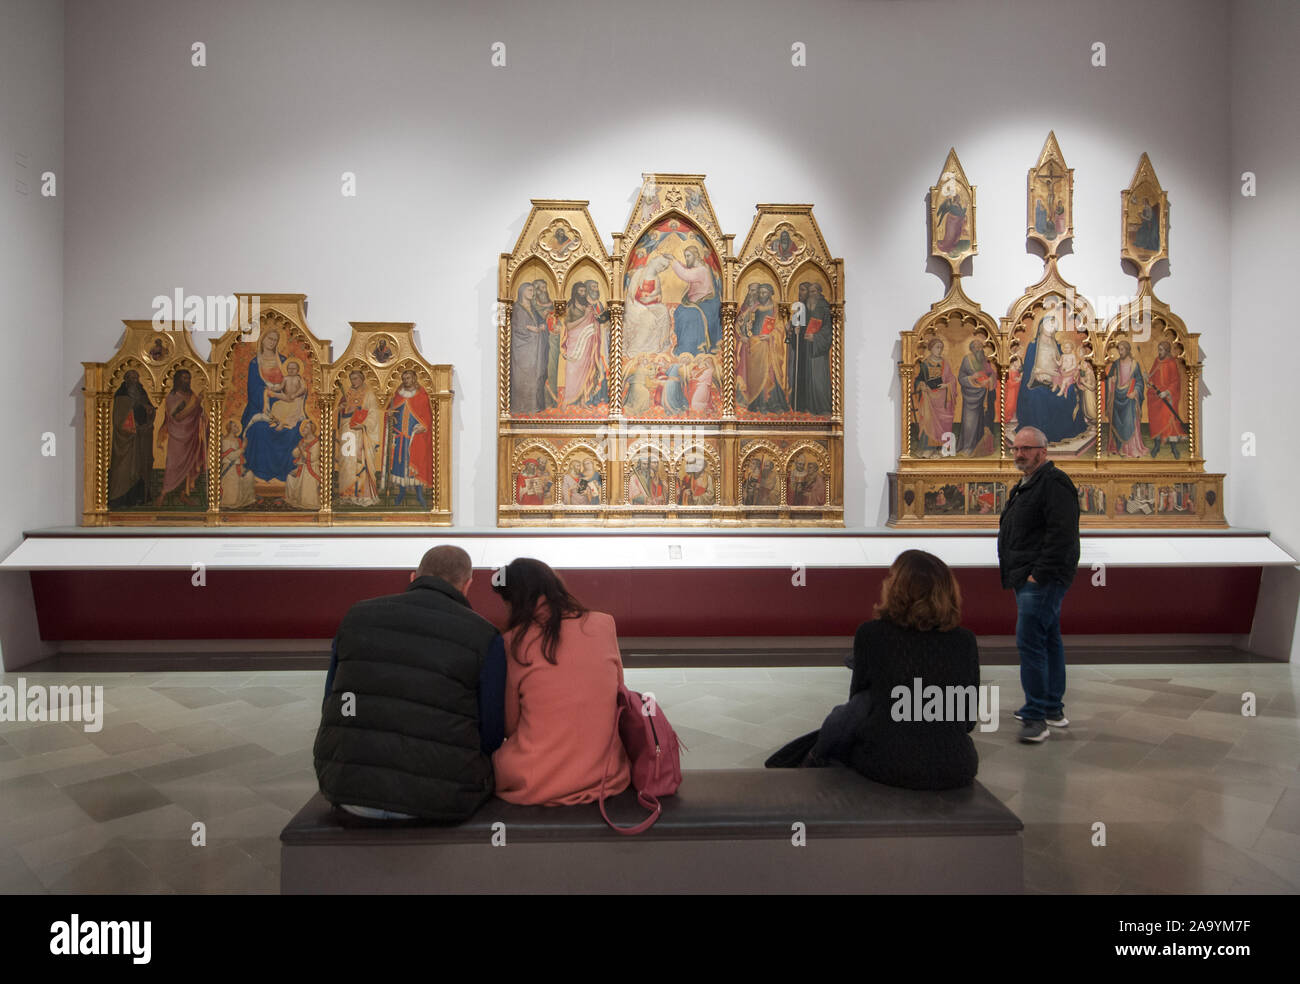 Florencia, Italia - 2019, 10 de noviembre: Pinturas en una sala de la galería de la Accademia. Los visitantes admiran algunas famosas pinturas religiosas. Foto de stock